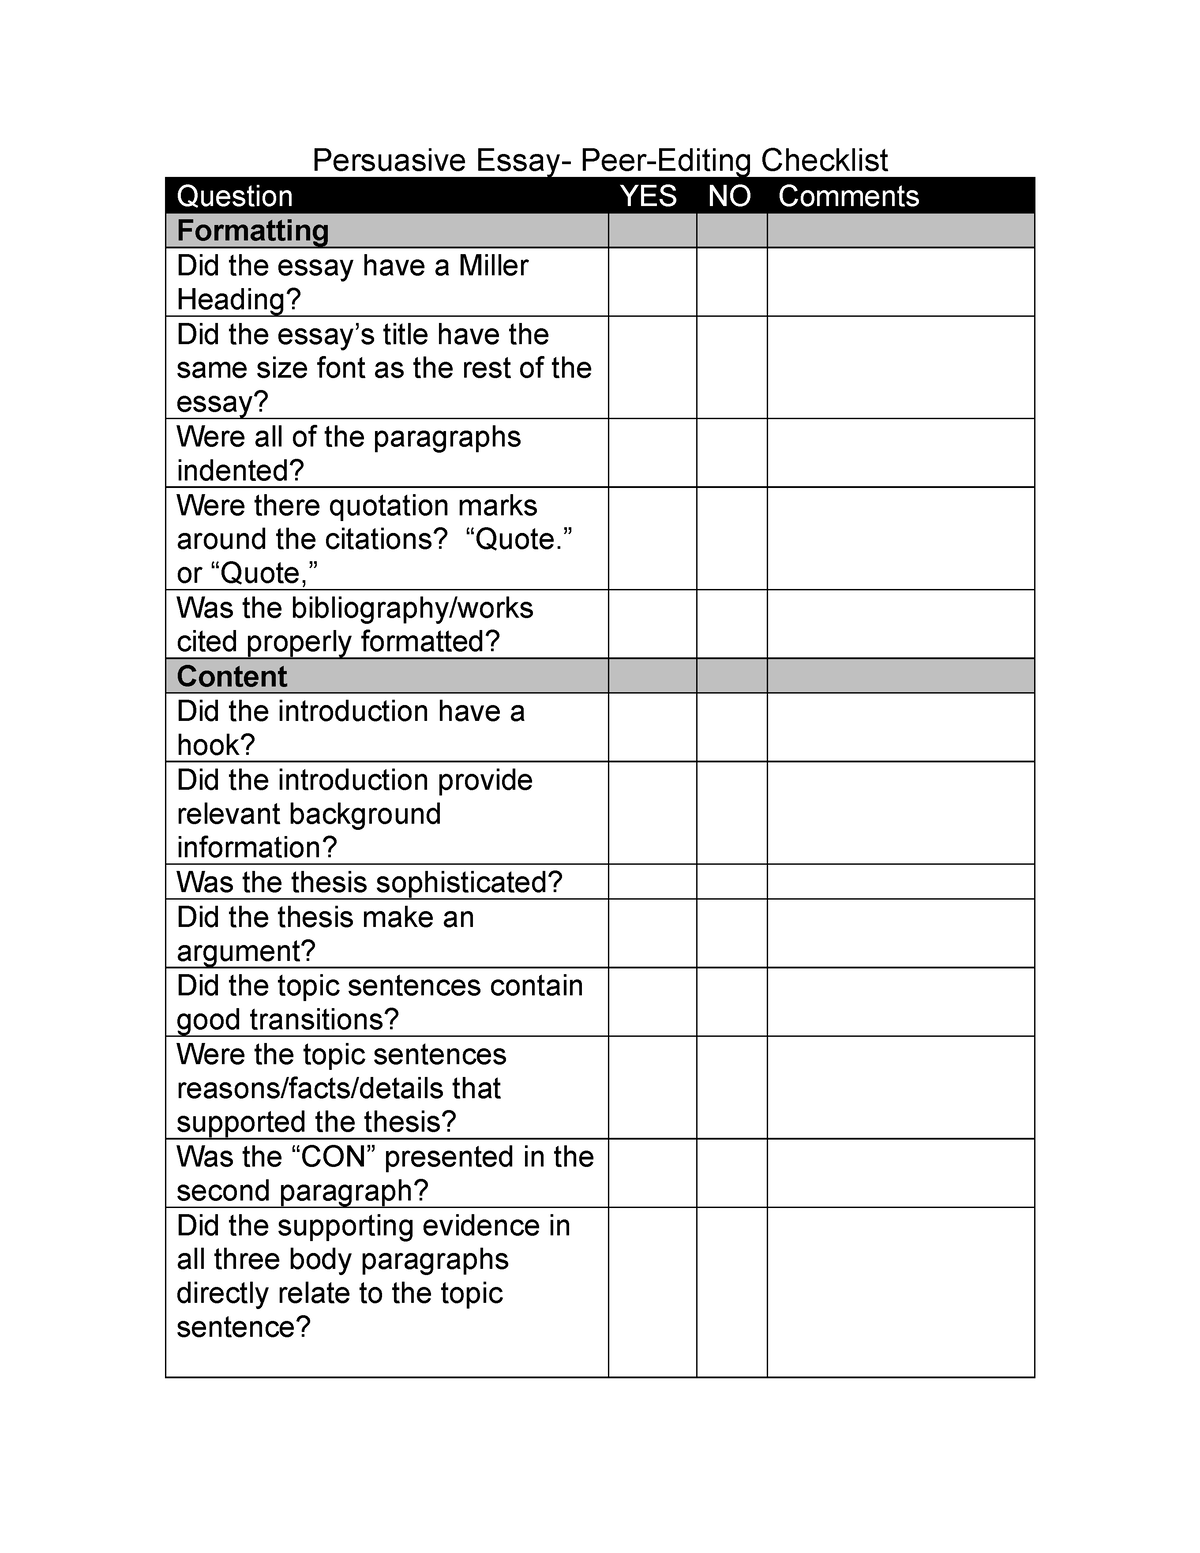 peer editing checklist for persuasive essay